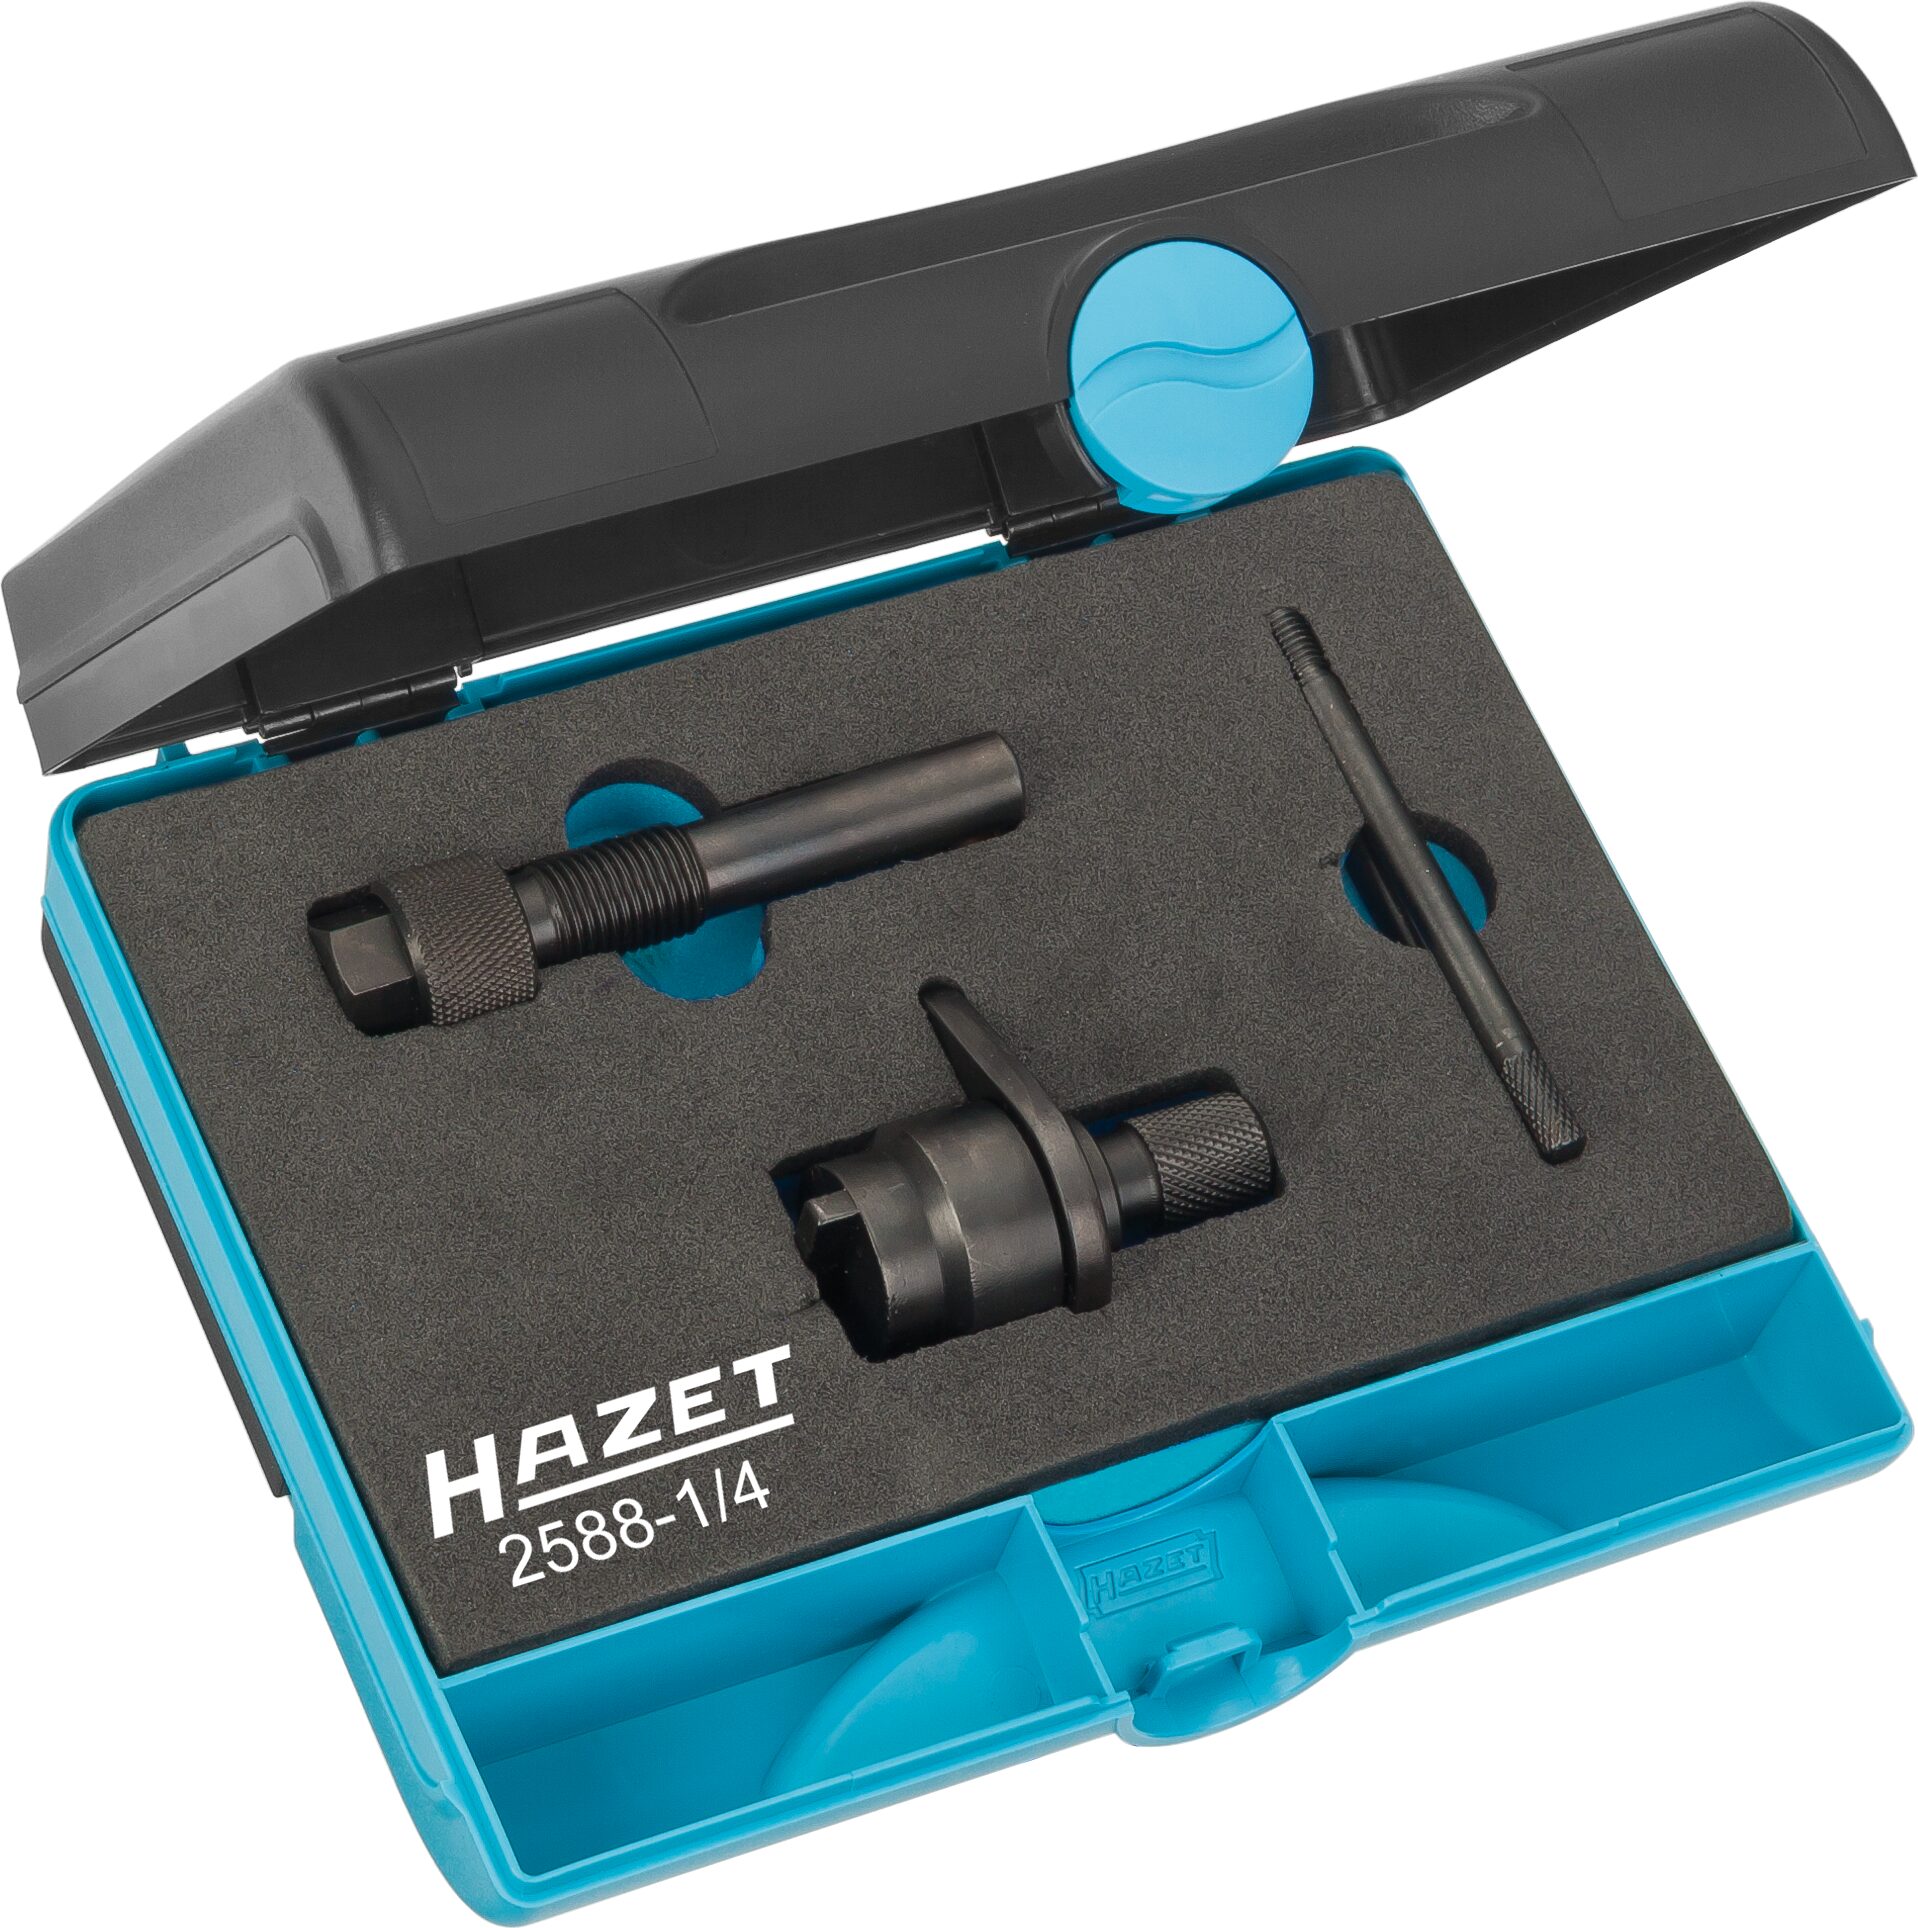 HAZET Motoreinstell-Werkzeug VW 1,2 TFSi · mit Steuerkette 2588-1/4 · Anzahl Werkzeuge: 4